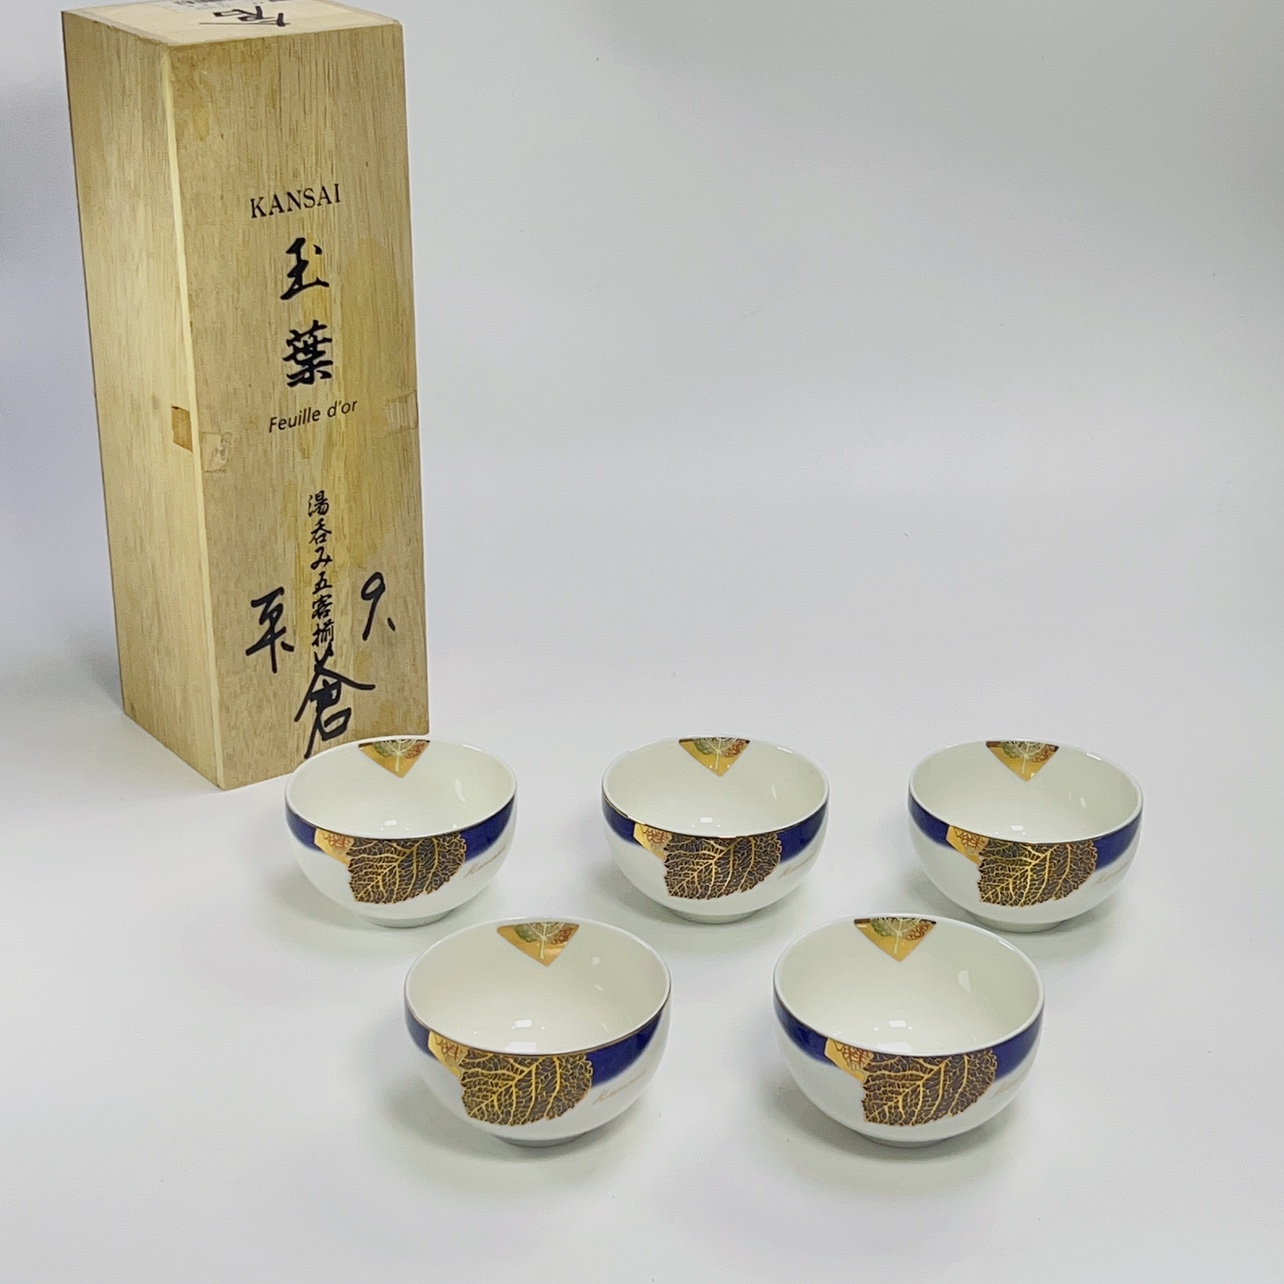 日本 回流 进口瓷 kansai 描金 玉葉 五客杯 茶杯 茶碗 茶盏